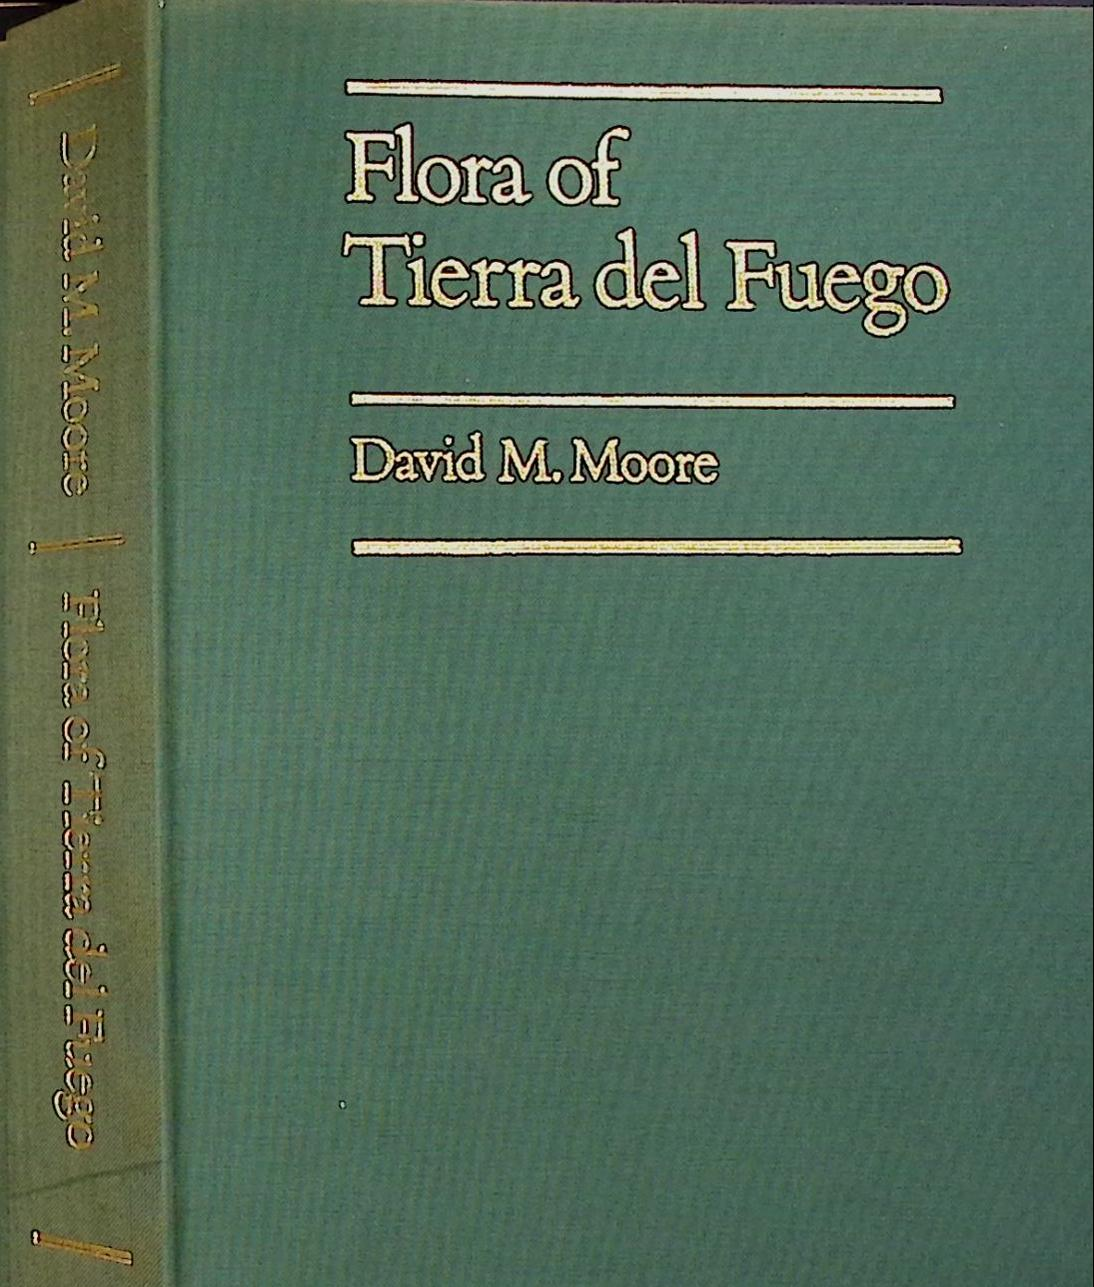 Flora of Tierra del Fuego